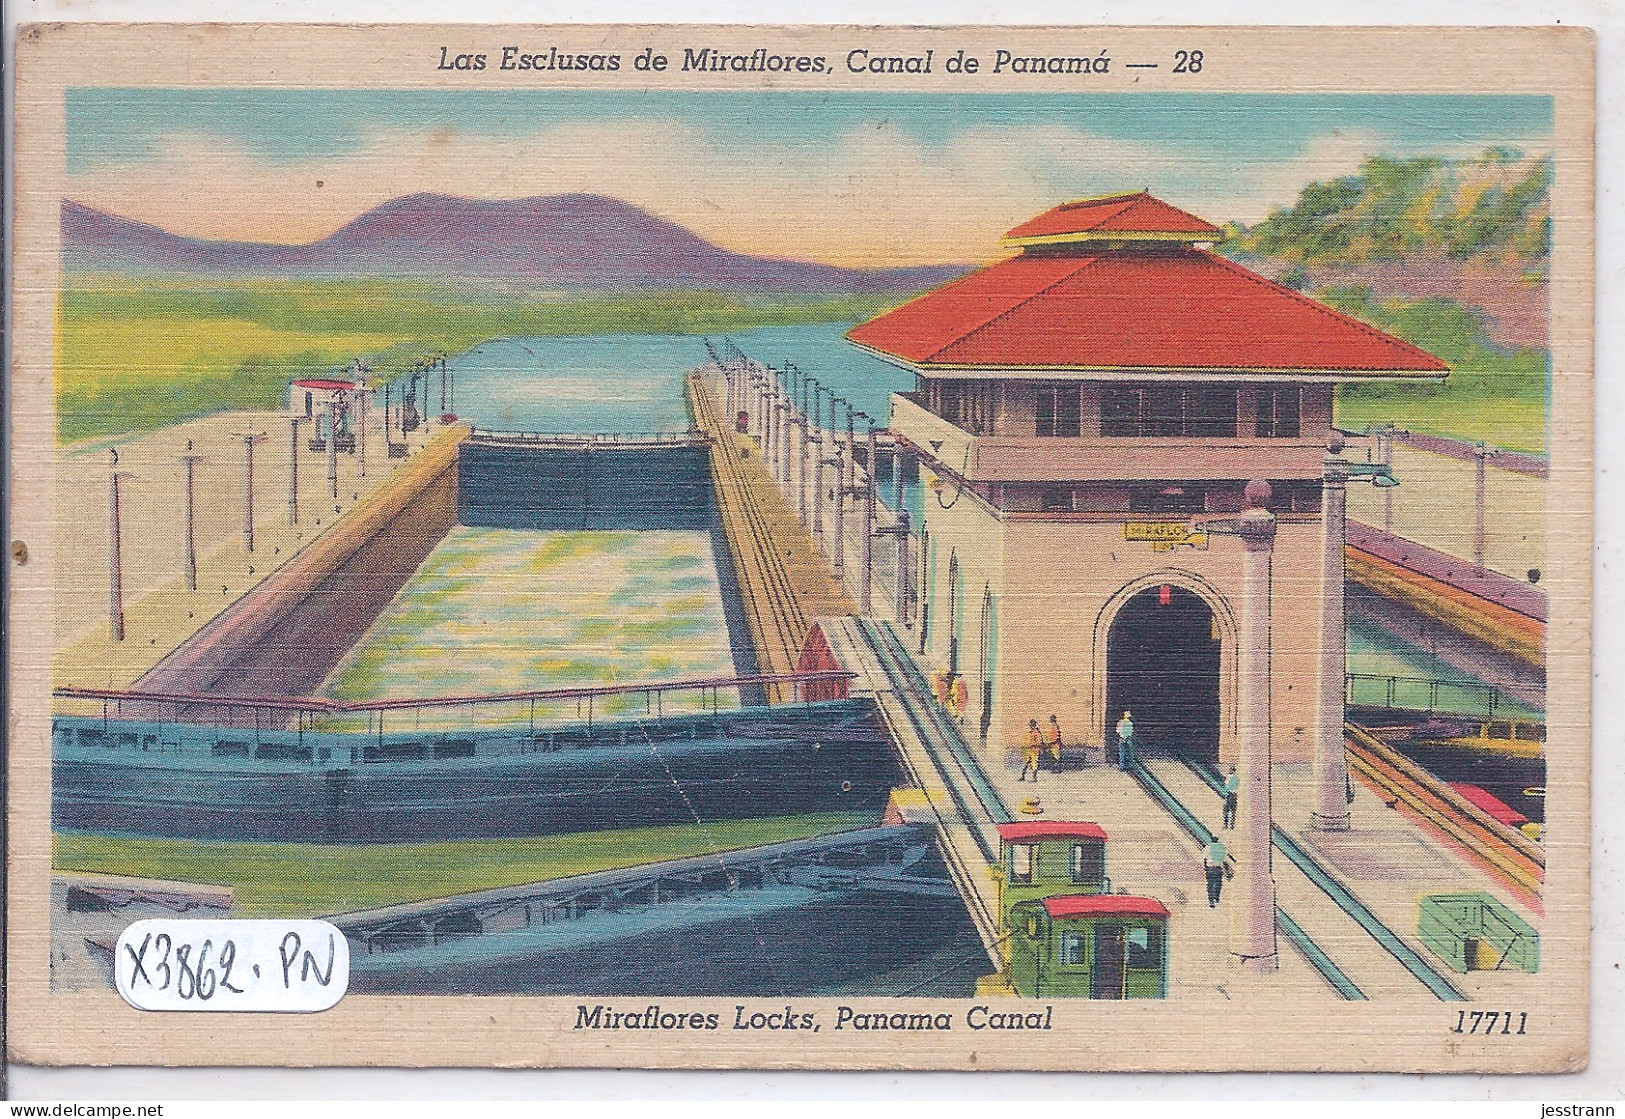 PANAMA- LAS ECLUSAS DE MIRAFLORES- CANAL DE PANAMA- - Panamá